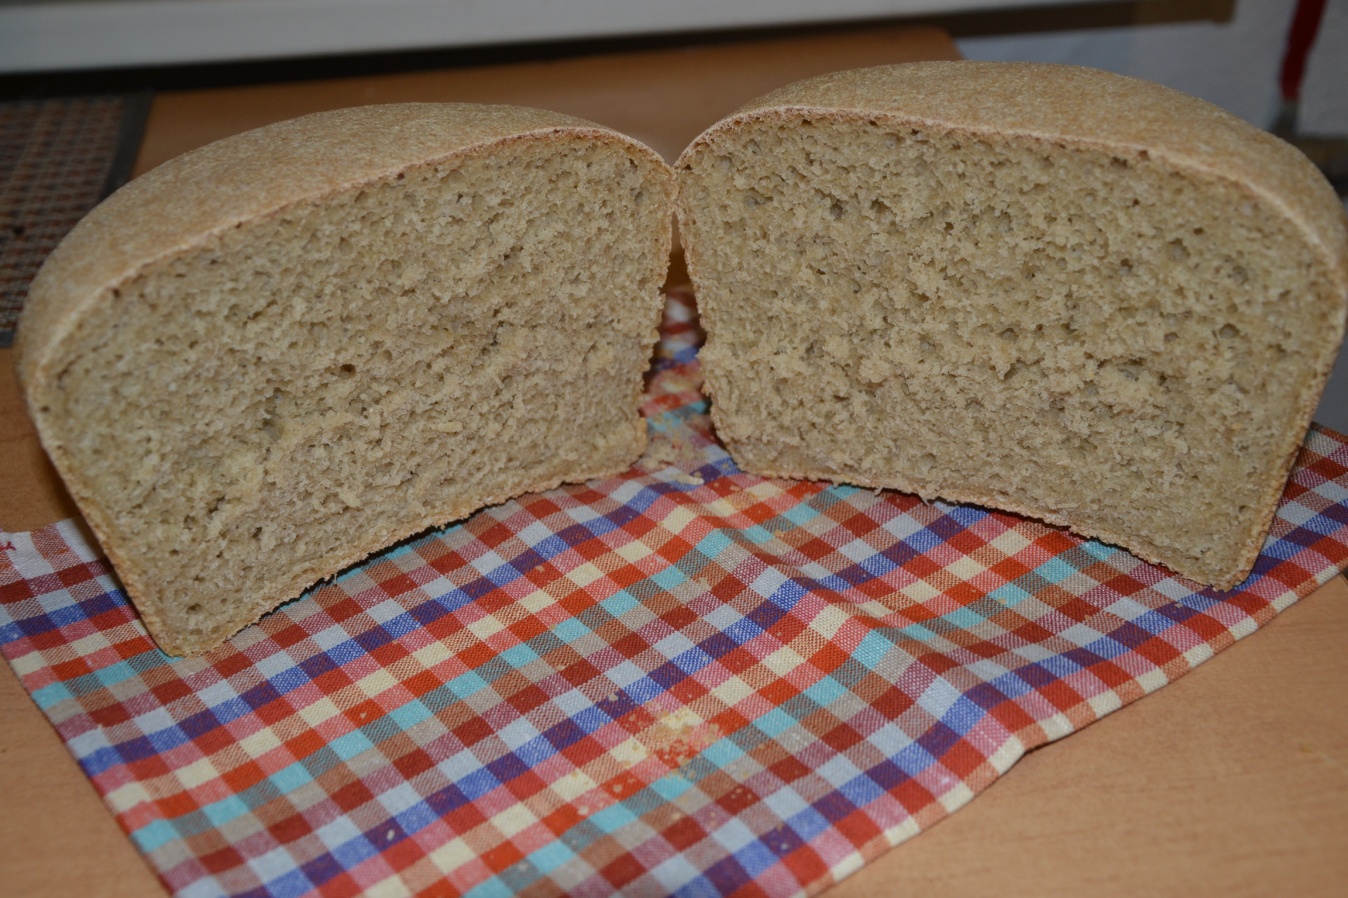 Практический материал к проекту Хлеб всему голова пшеничный хлеб на закваске